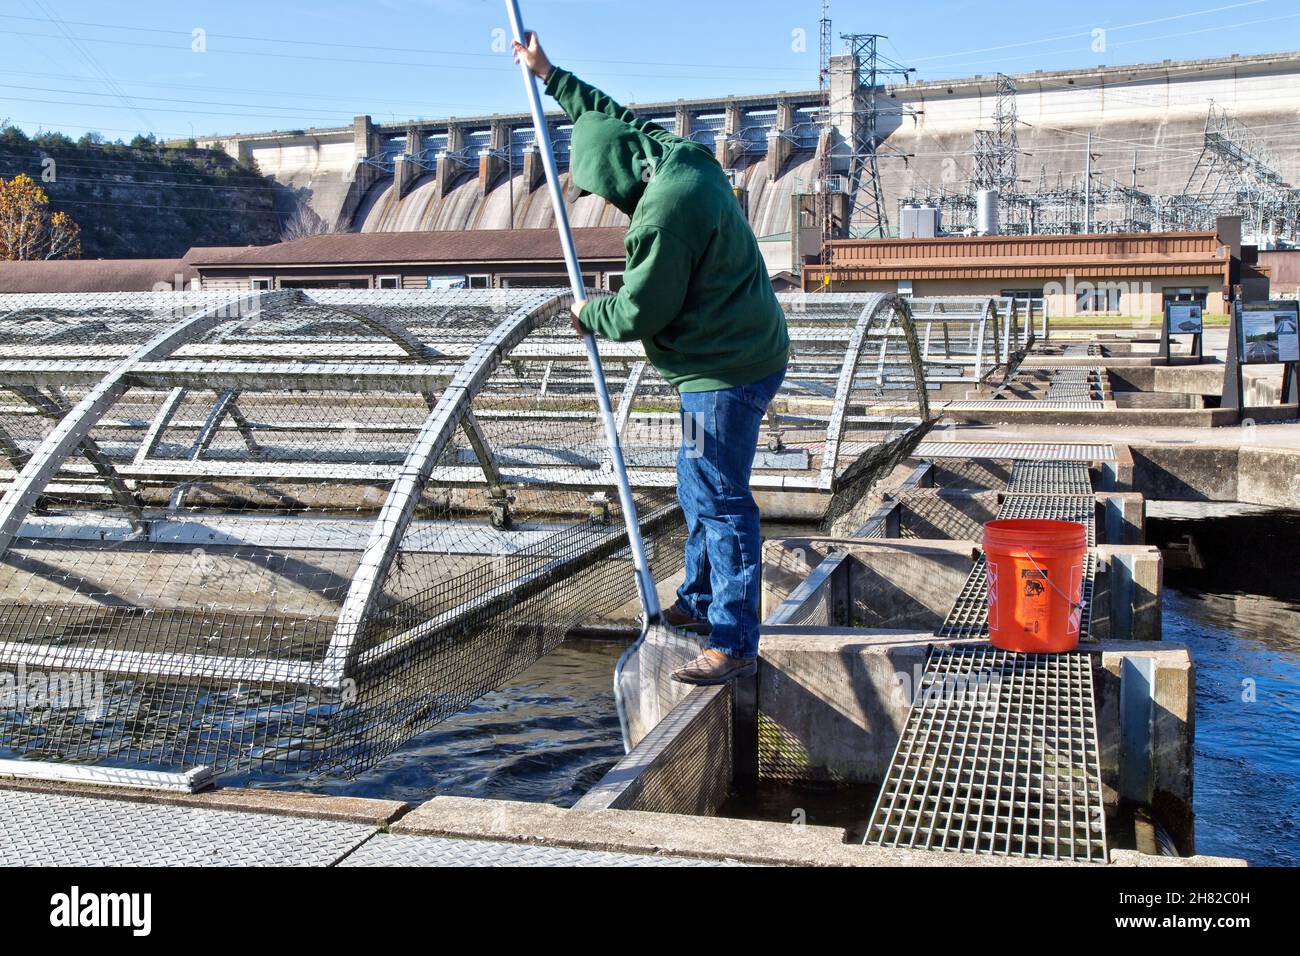 Técnico limpiando, quitando peces muertos de la pista, Pastor de las Colinas Criadero de Pescado, Centro de Conservación. Foto de stock